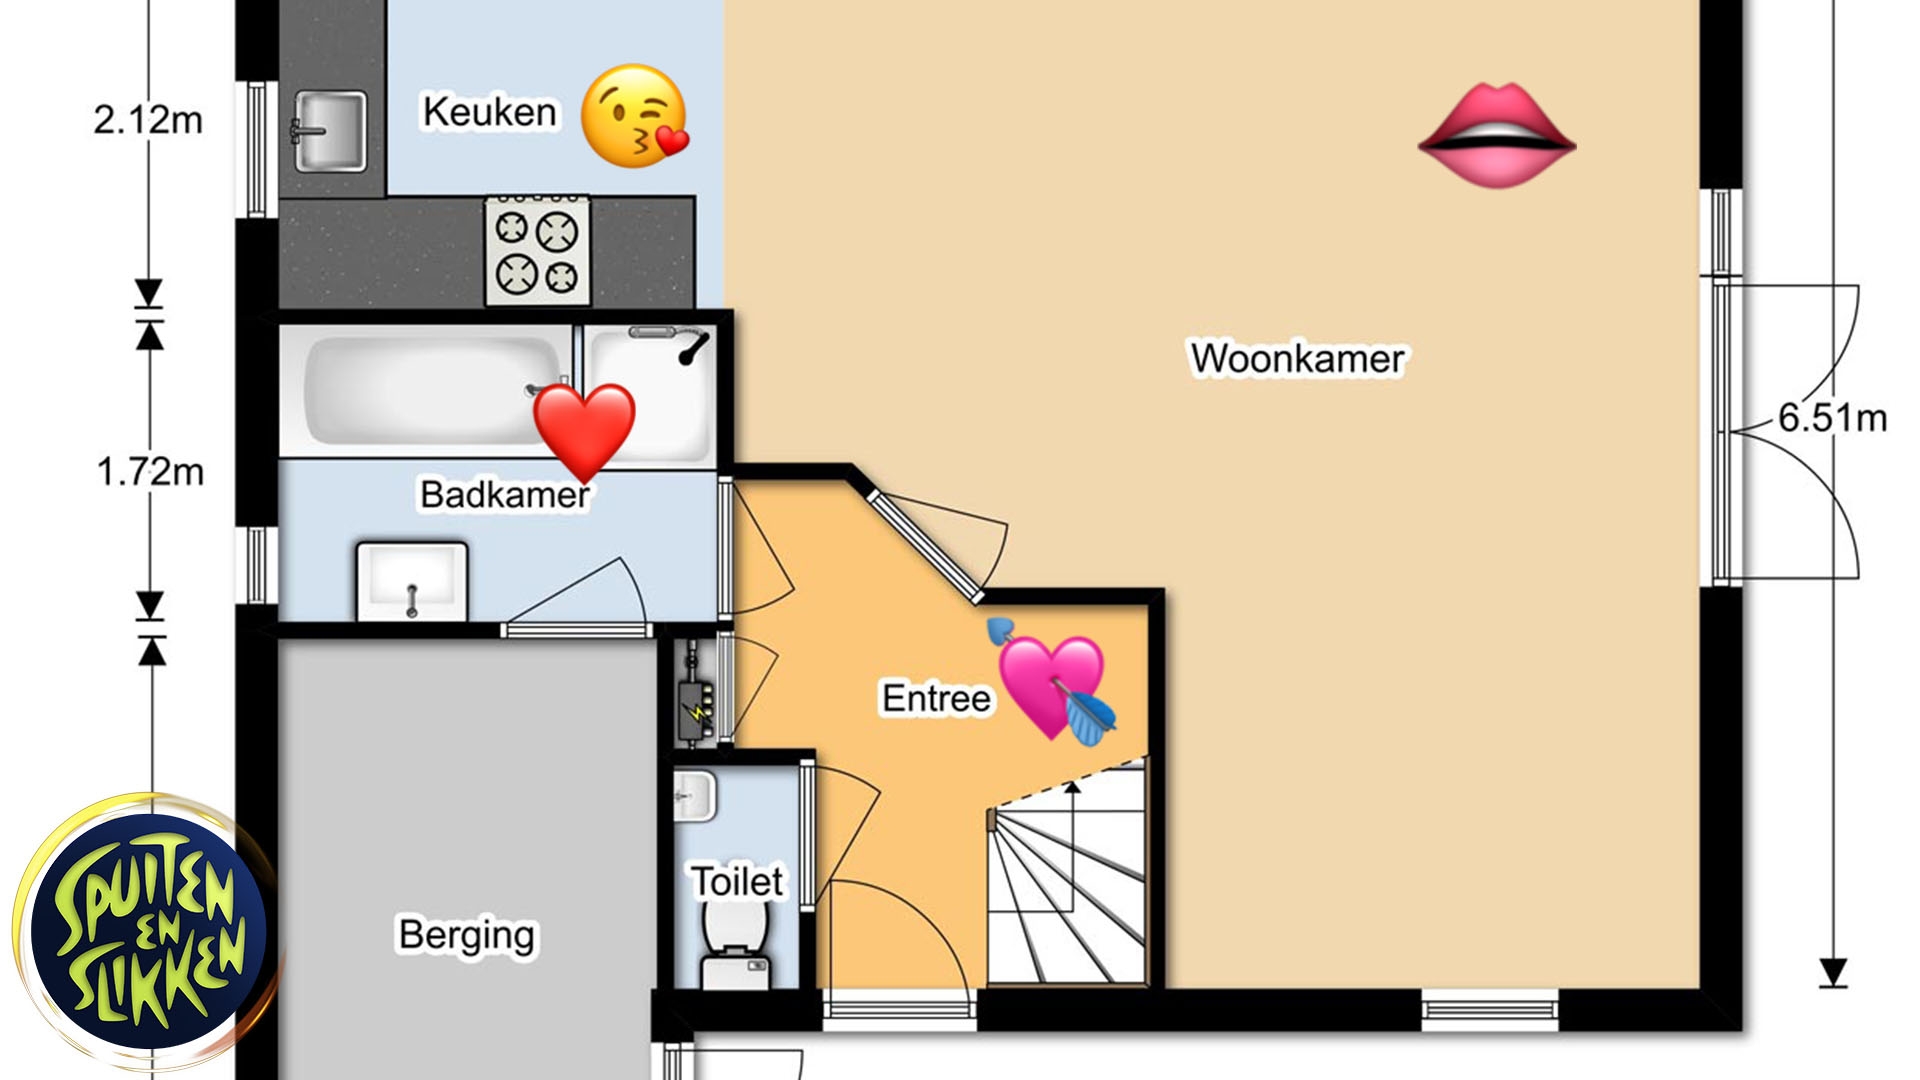 Afbeelding van De plattegrond voor seks in je huis